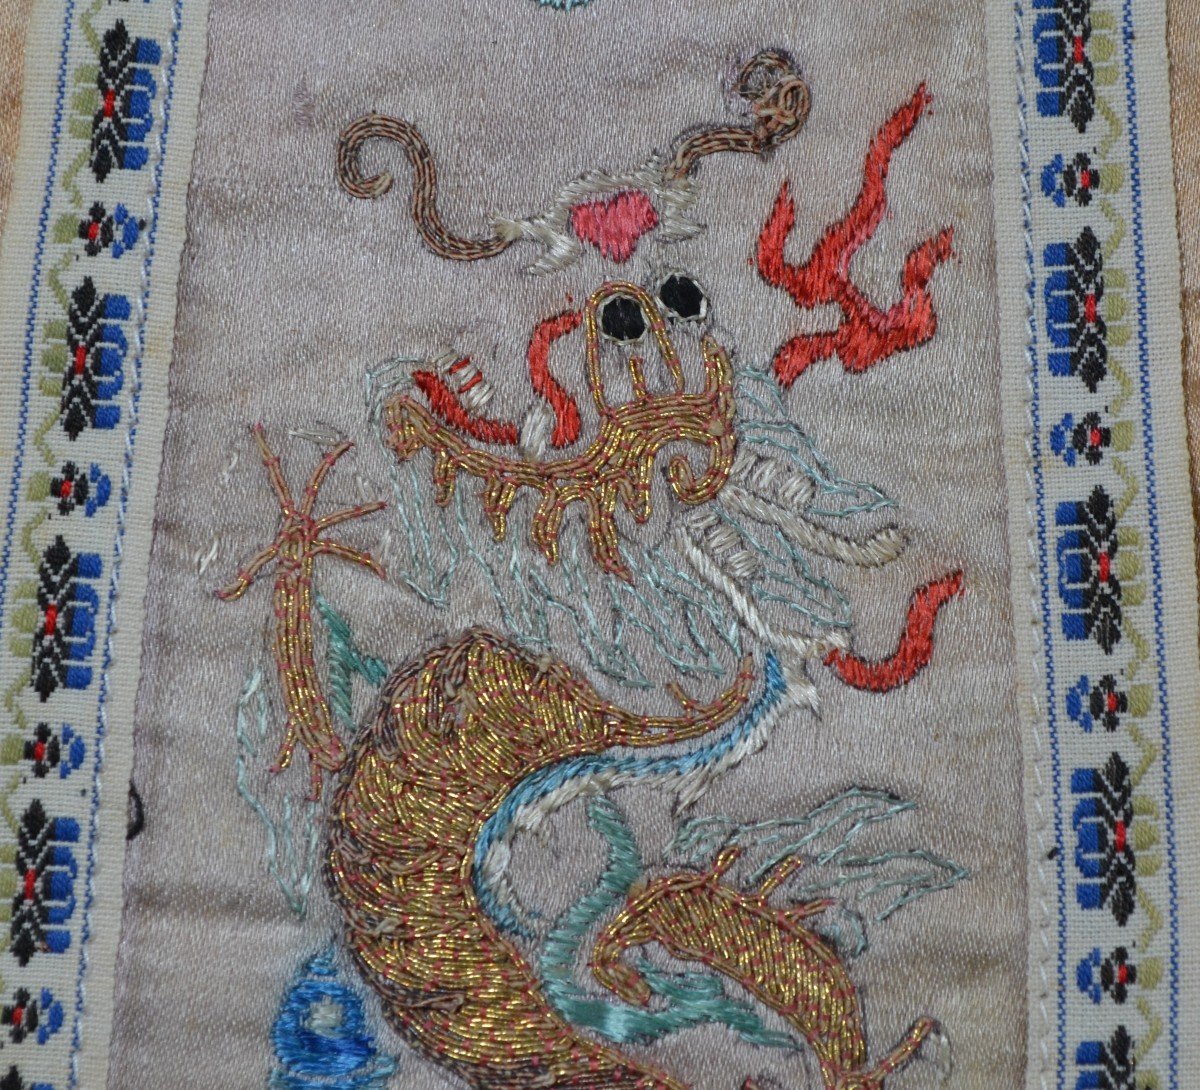 Panneau De Soie Brodée De Dragon Et Phoenix. Chine Période Qing.